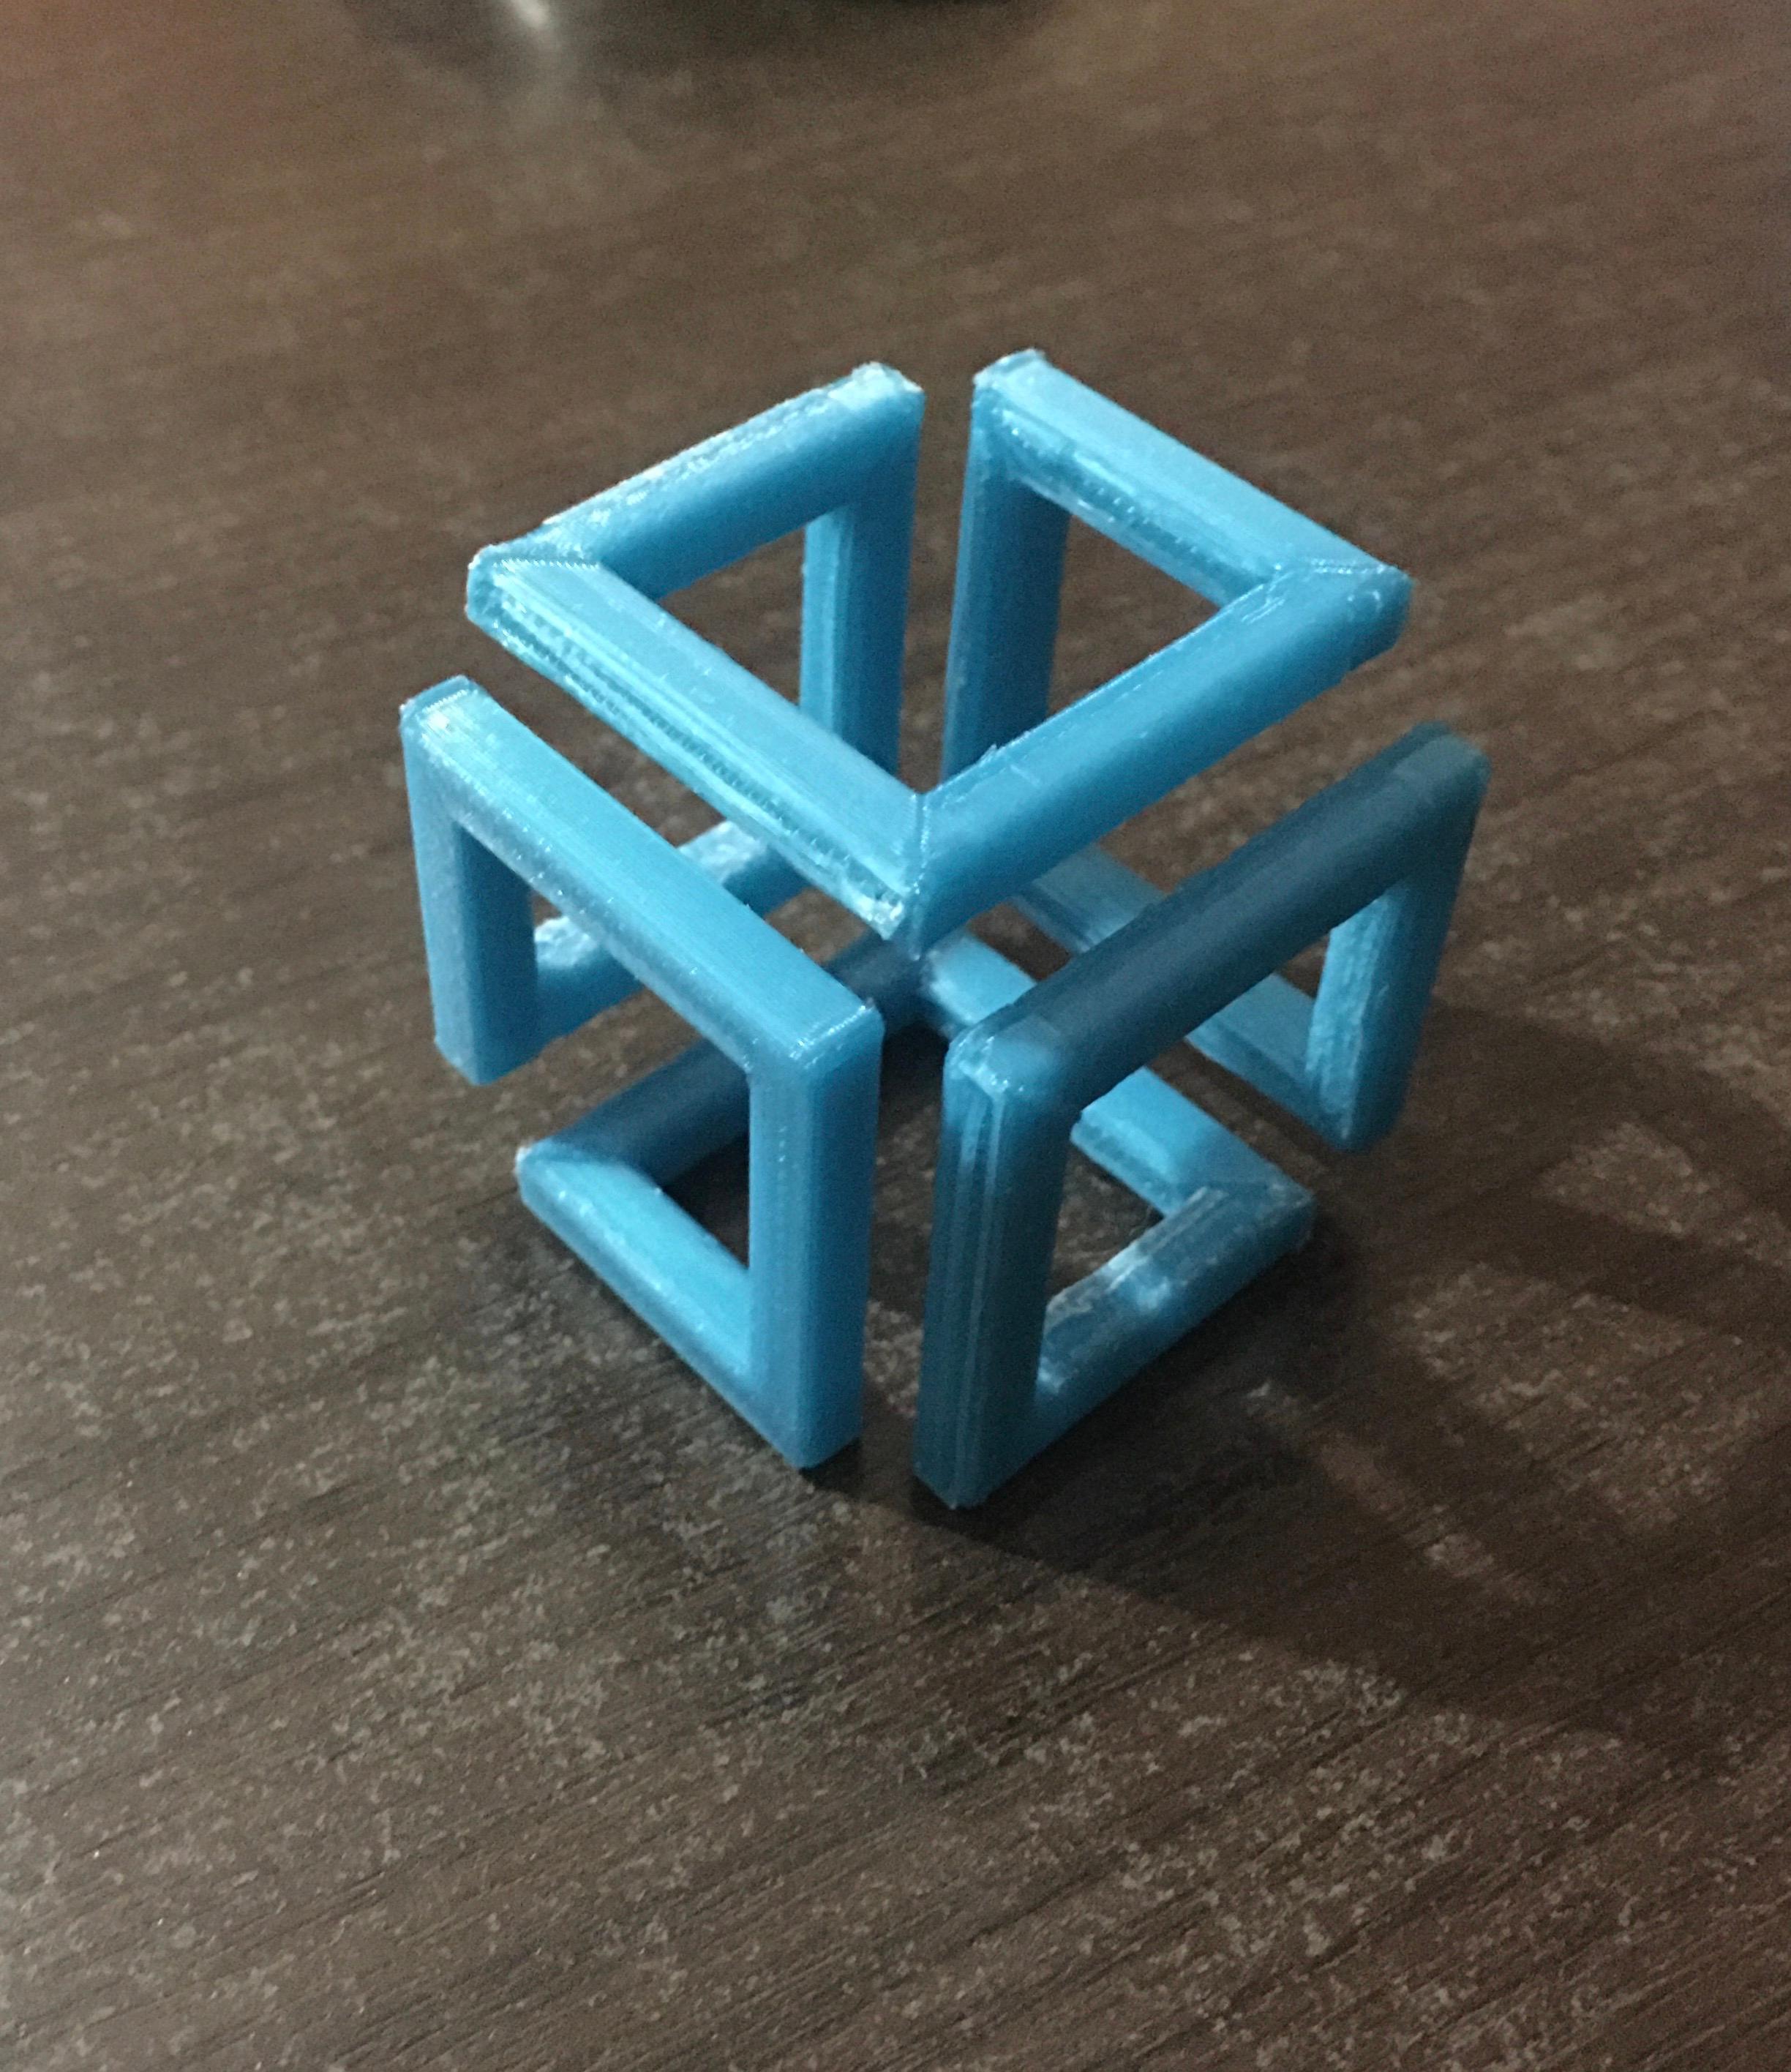 Cubo infinito 3d model